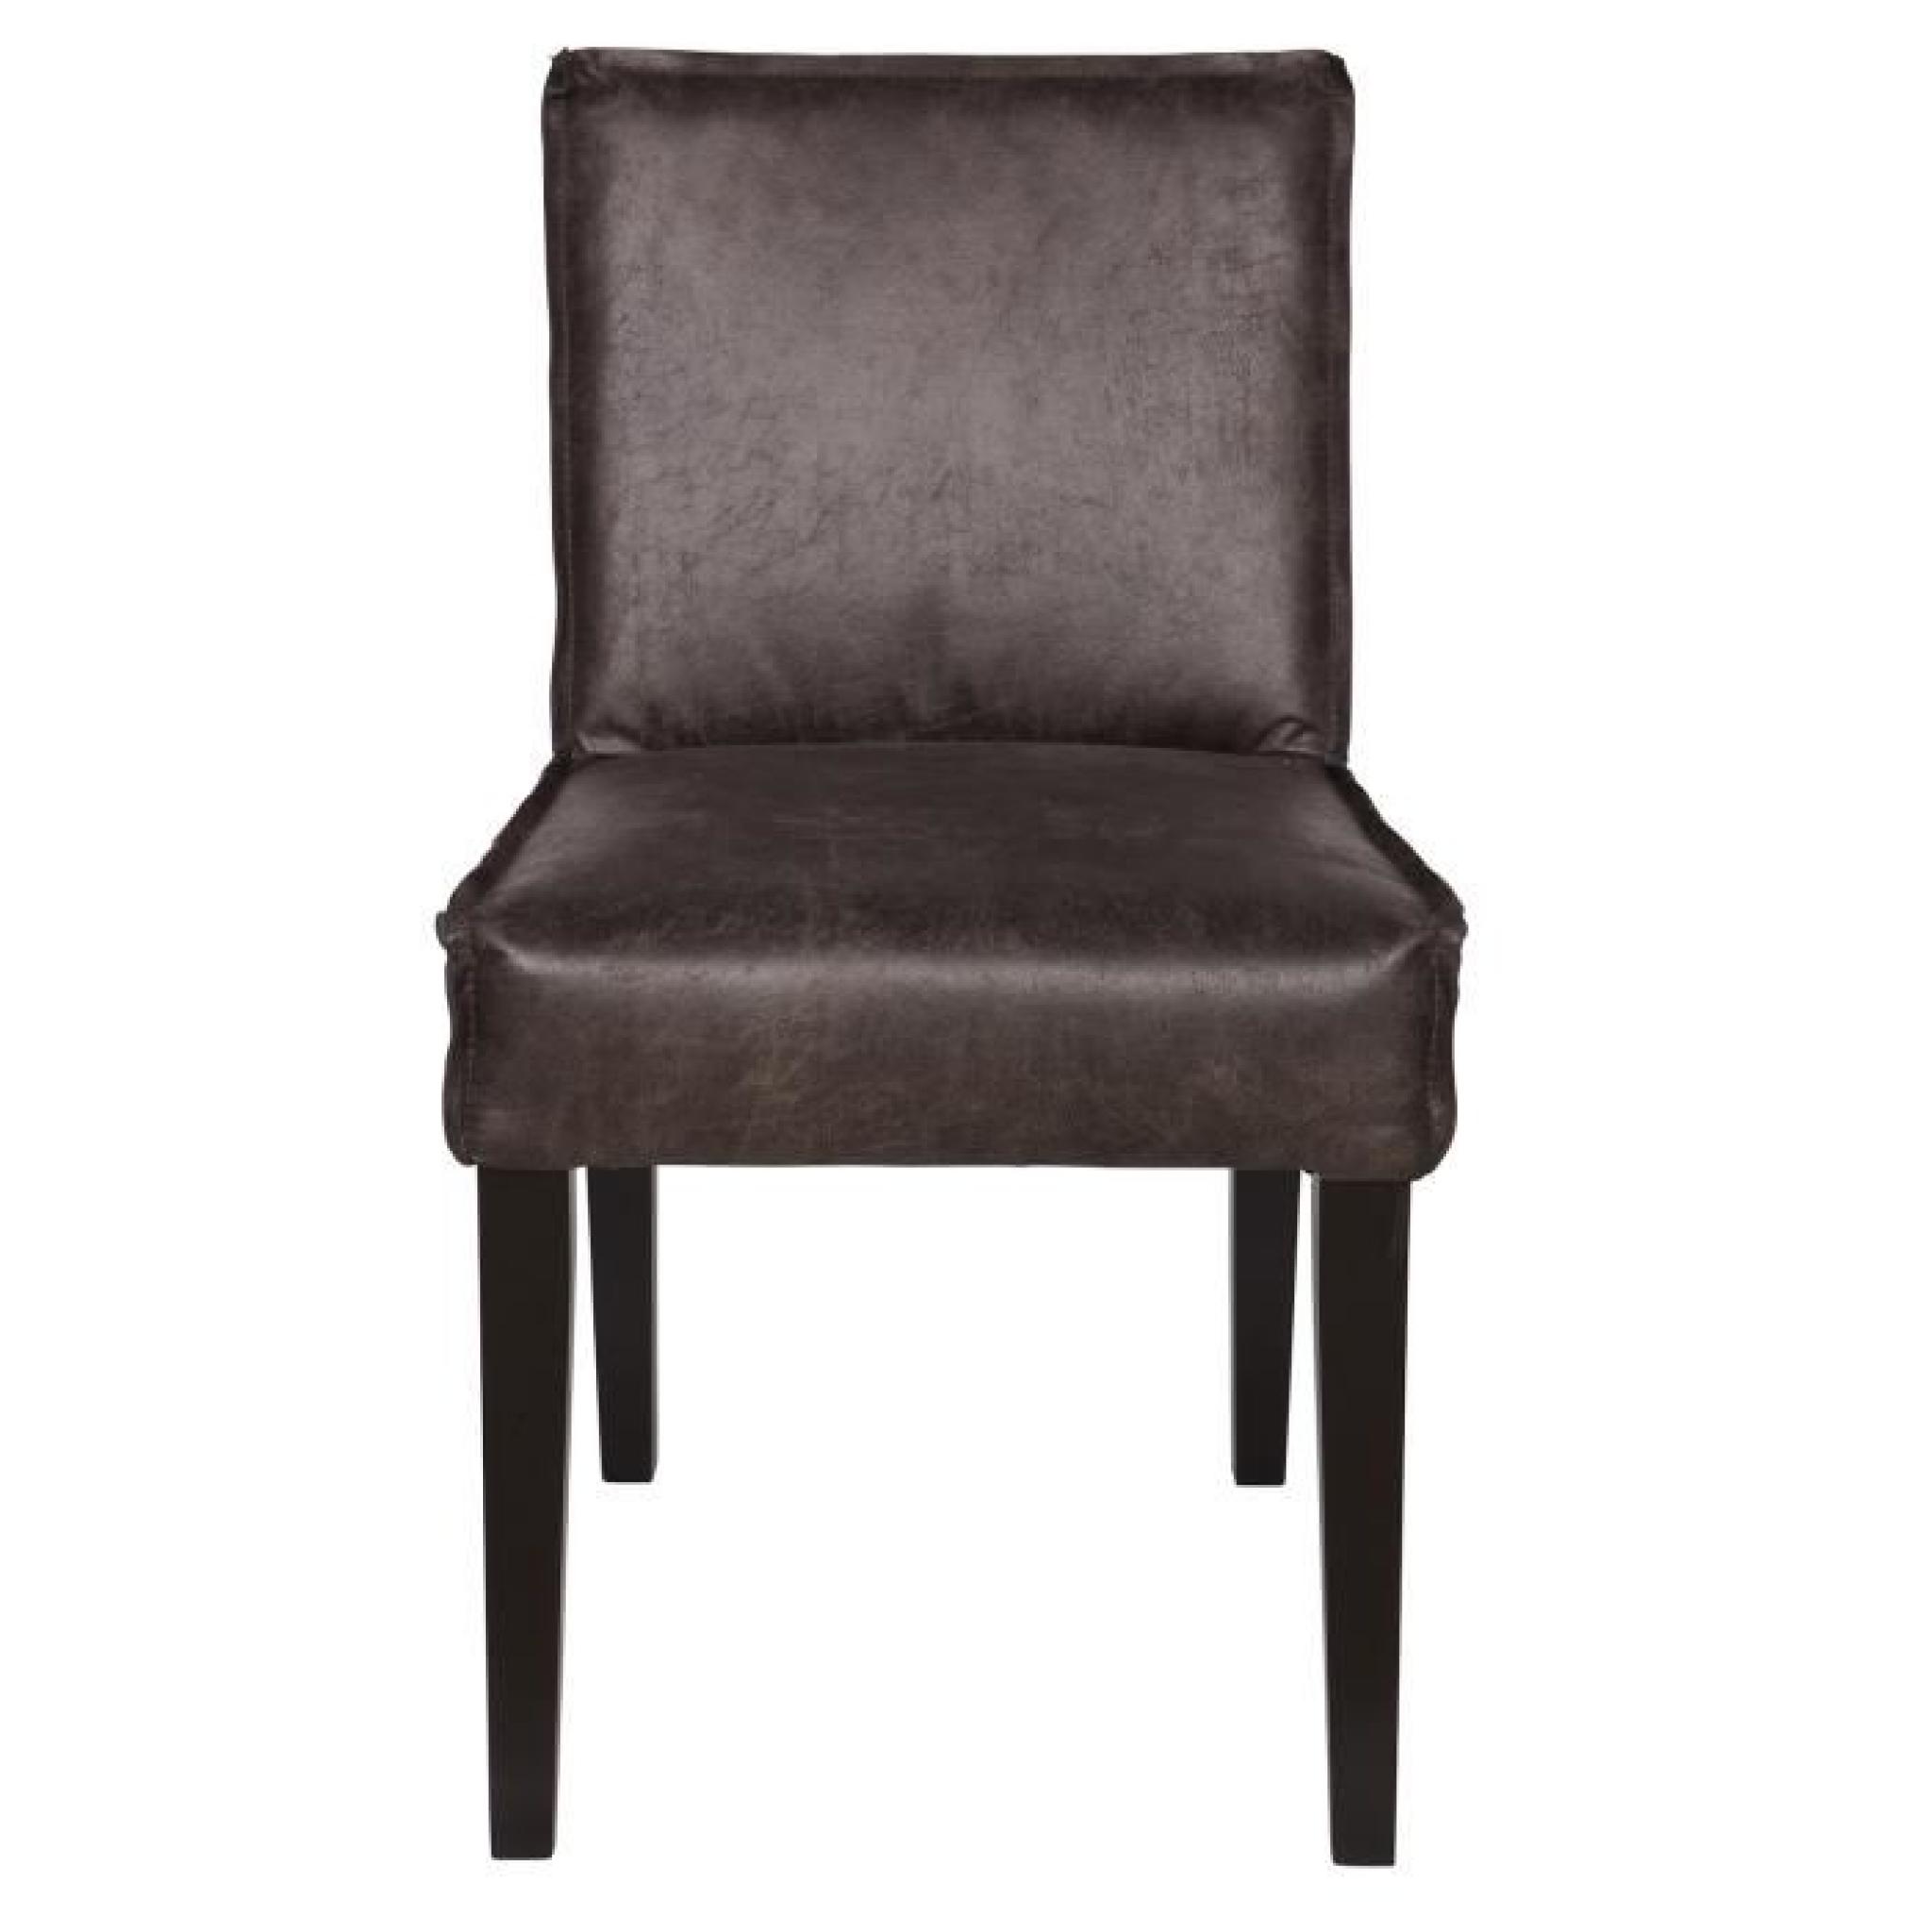 Chaise coloris cognac en noir, H 83 x L 45 x P 61 cm